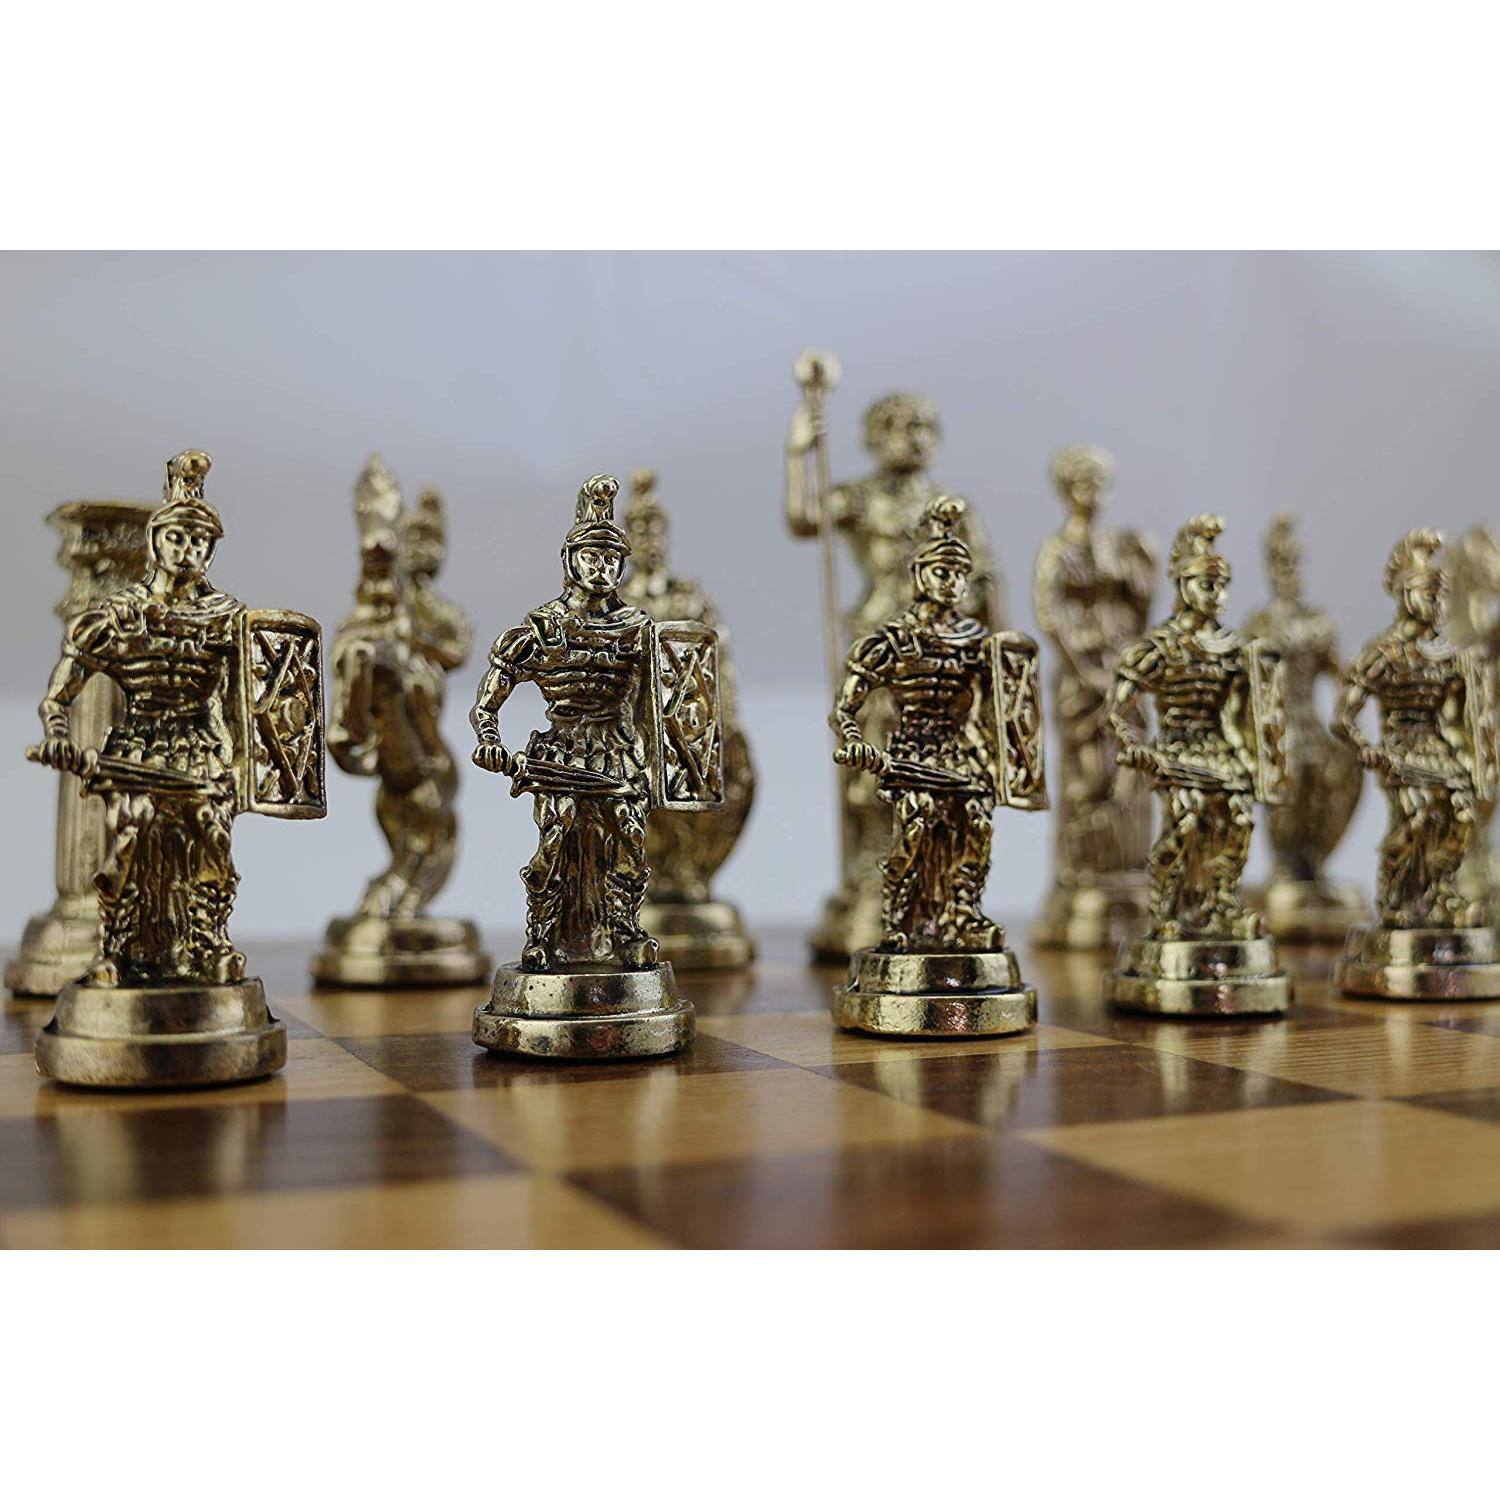 Изображение товара: (Только шахматные фигуры) исторические римские фигуры ручной работы, металлические шахматные фигуры большого размера, король 11 см (доска не входит в комплект)